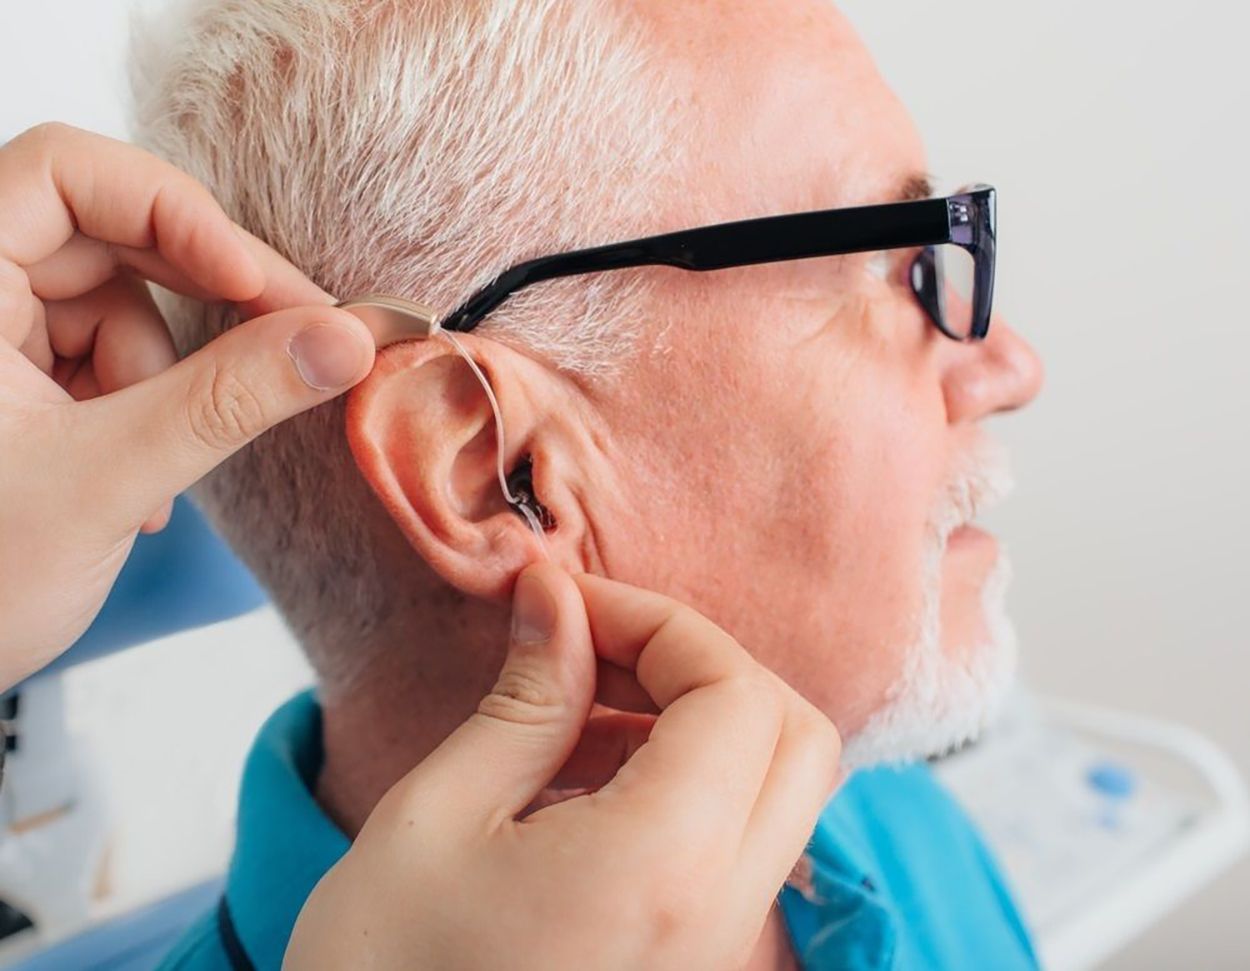 Pérdida auditiva audífono oído (Bigstock). Los audífonos pueden prolongar la vida de las personas con pérdida auditiva, según una investigación